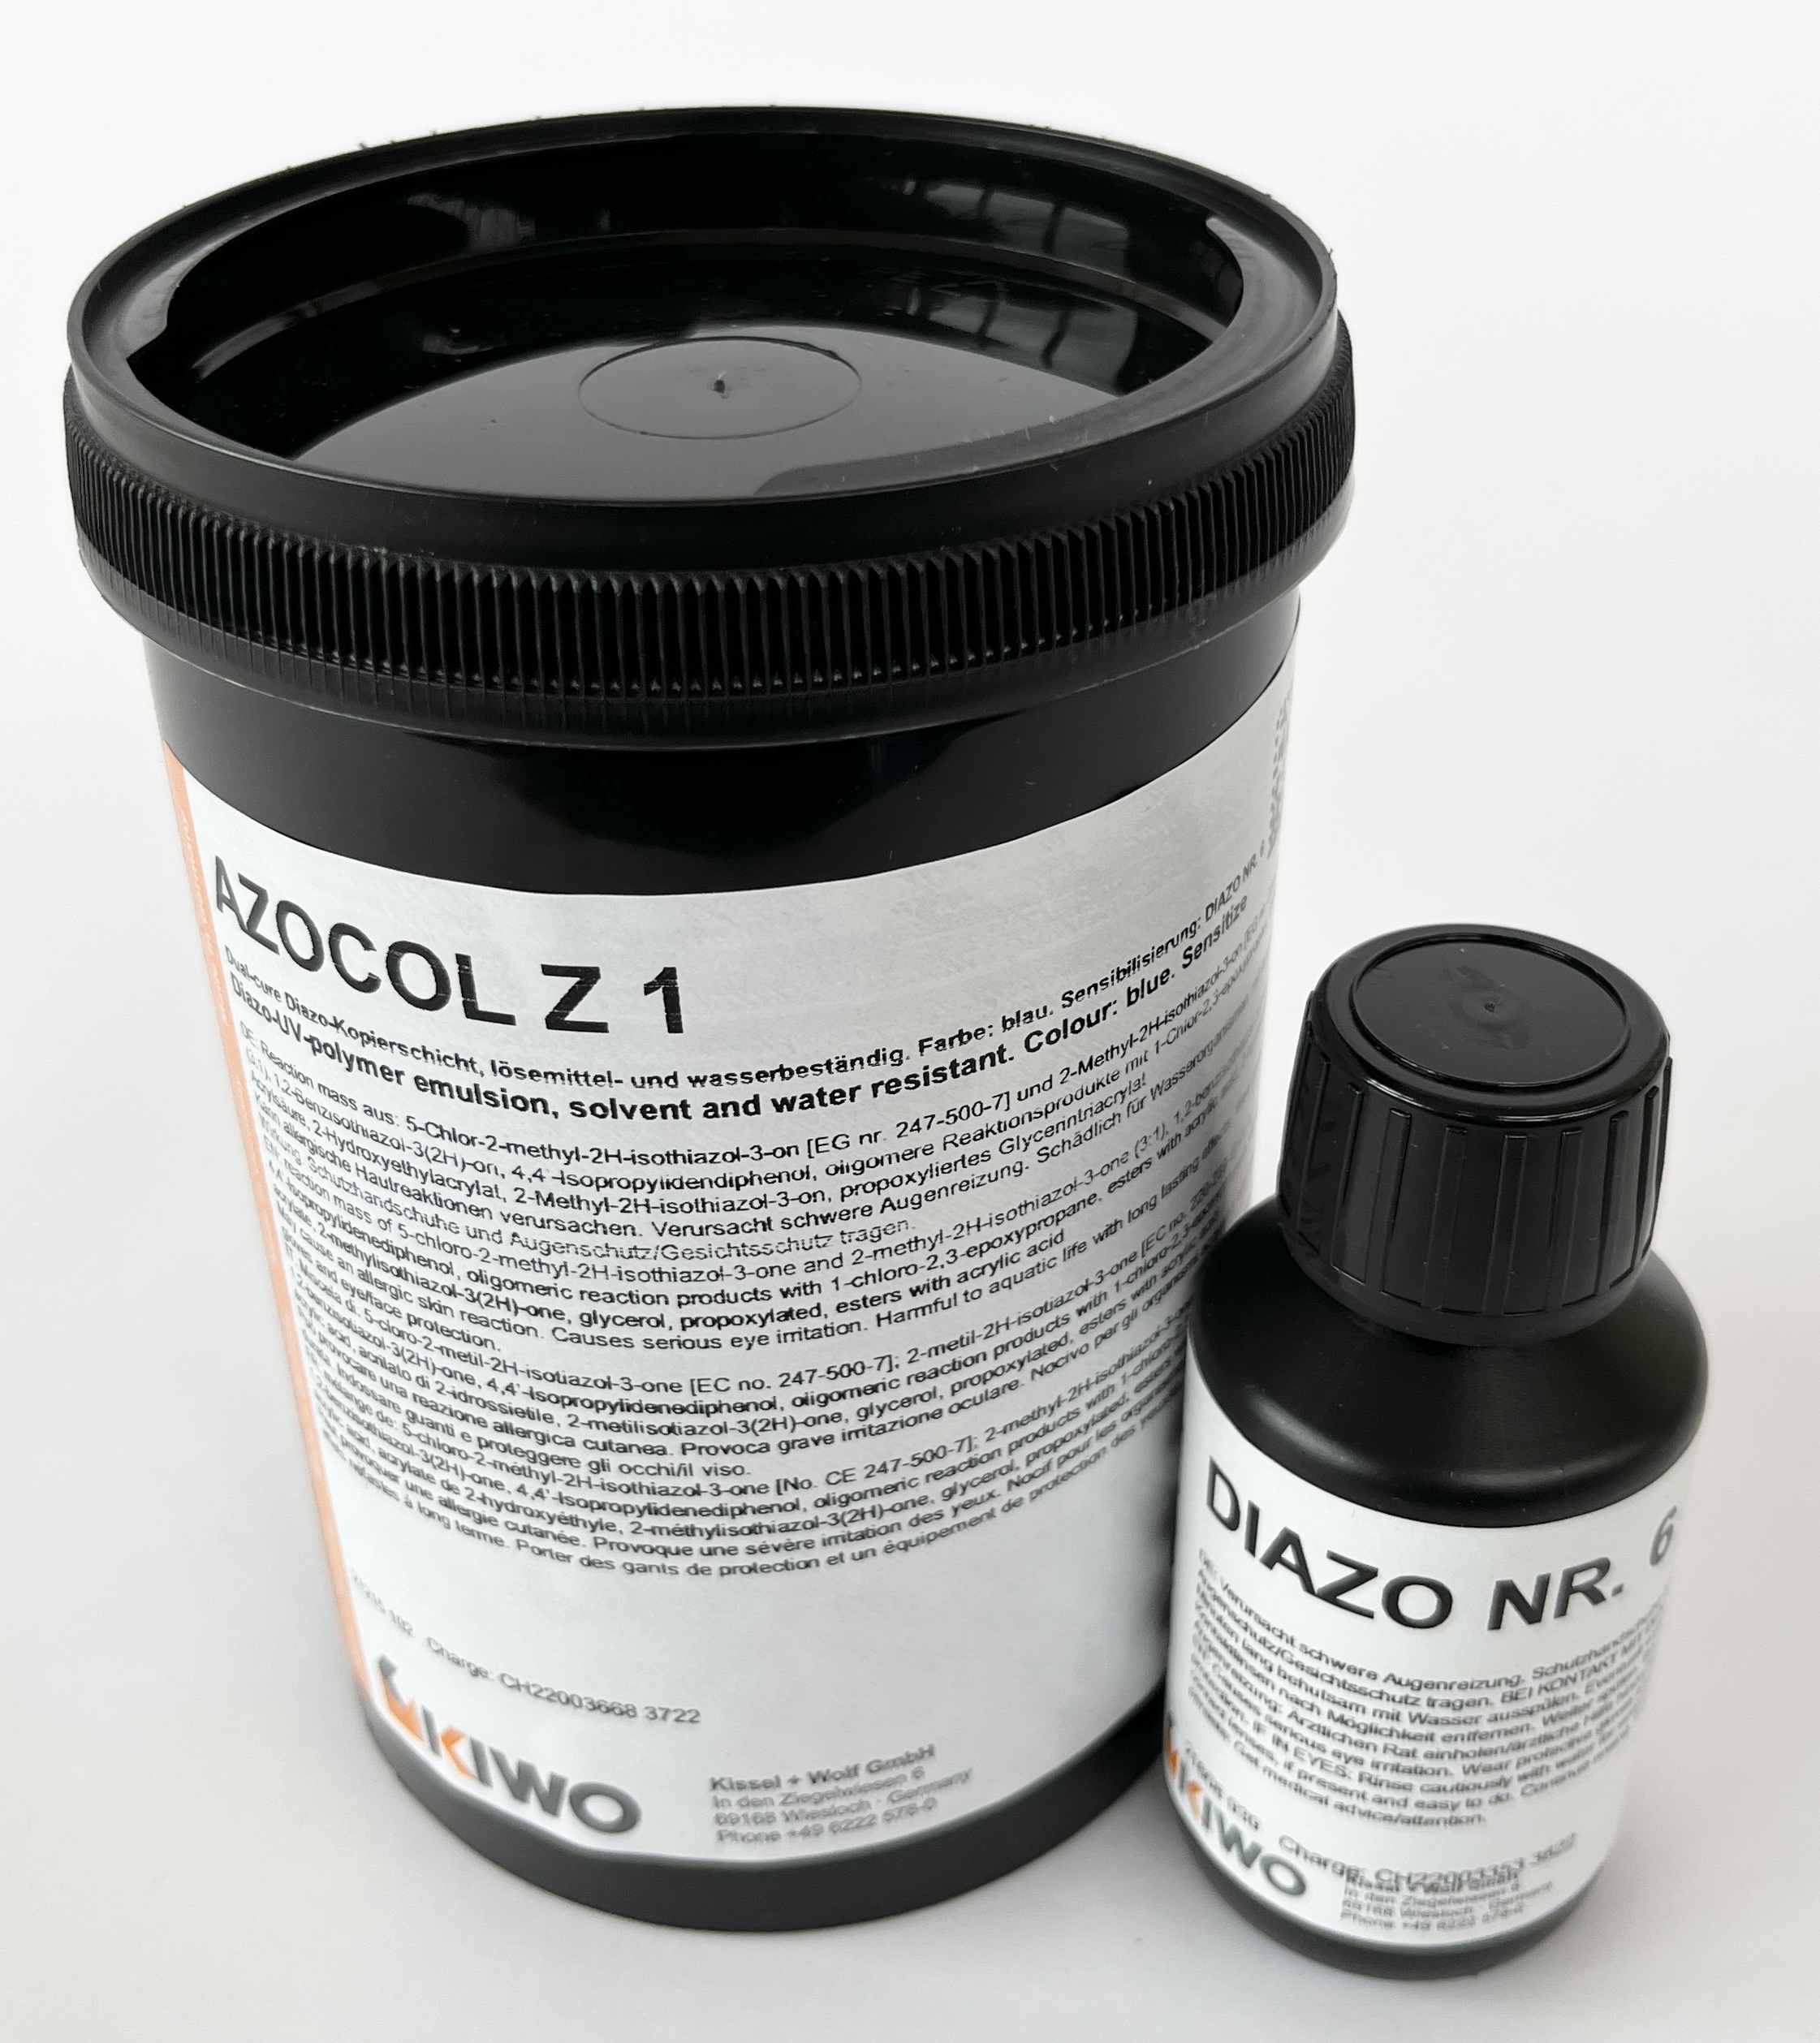 Azocol Z1